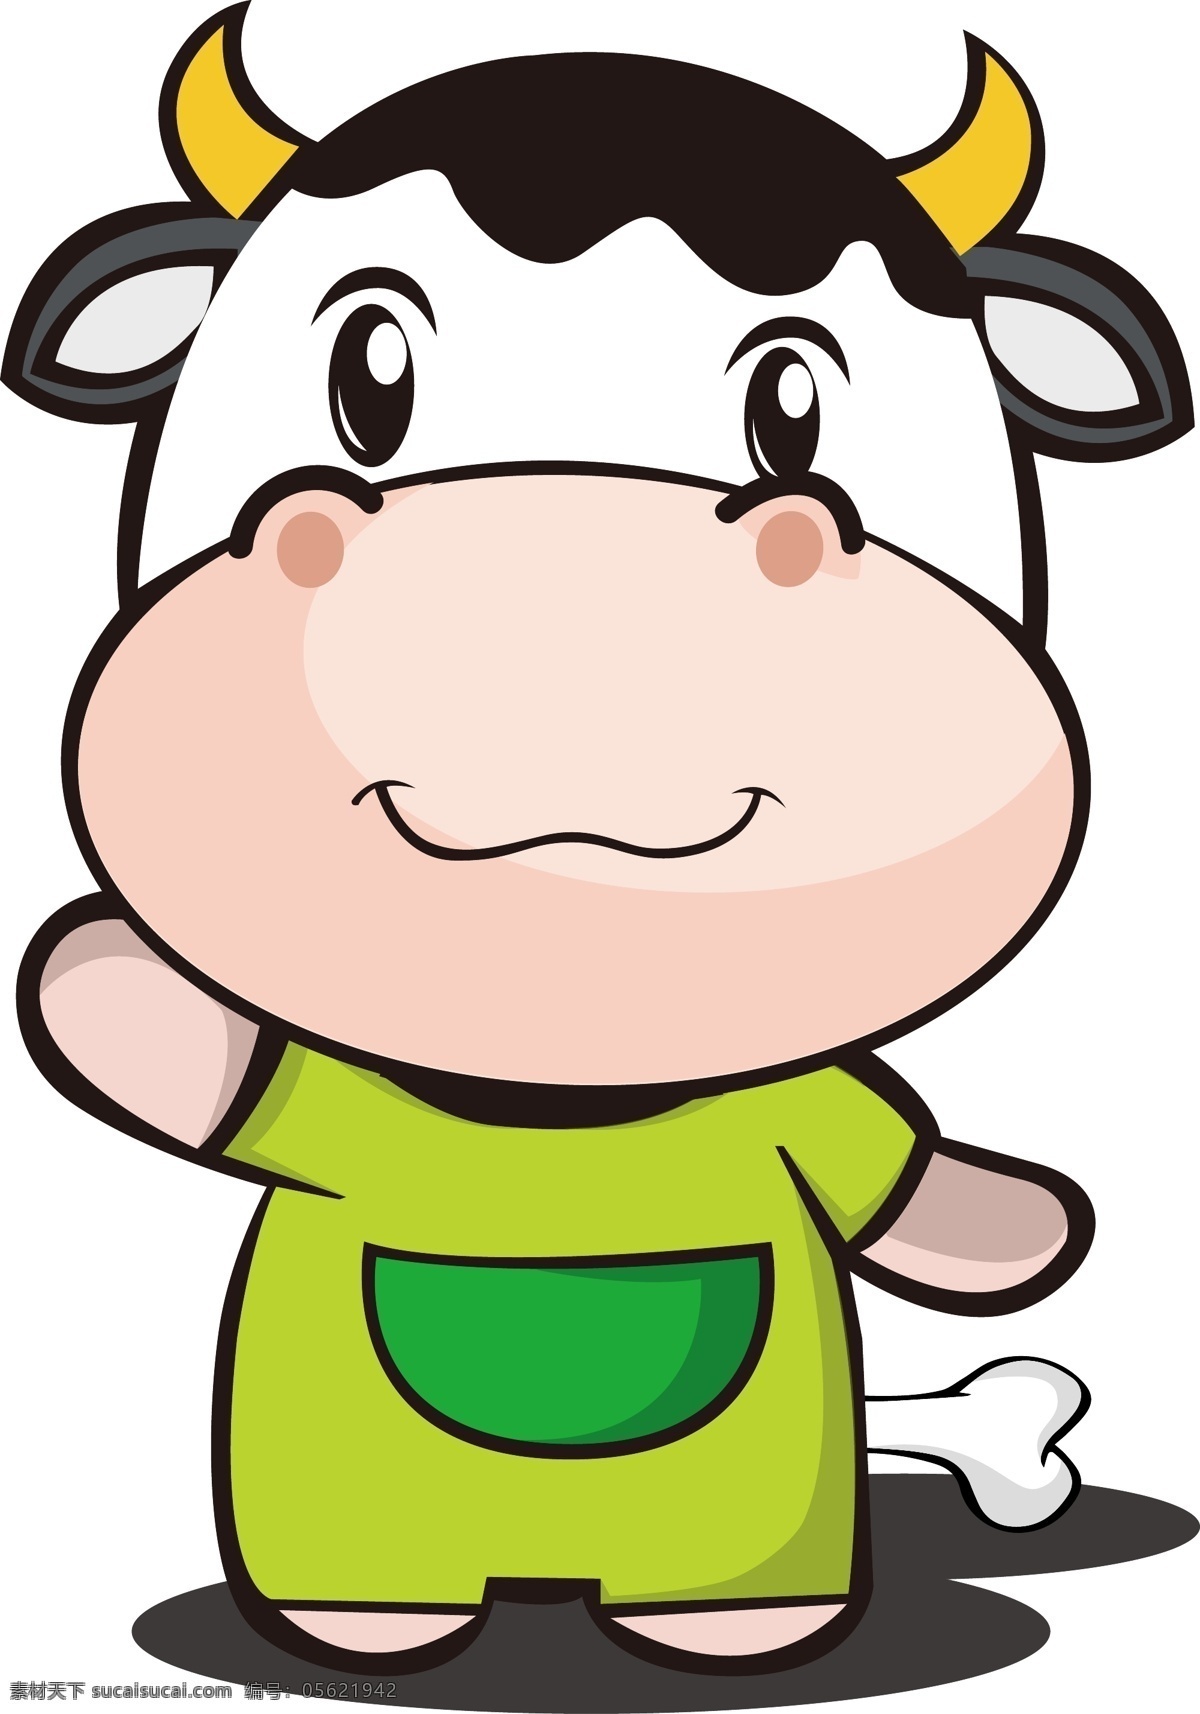 睡衣 牛 卡通 可爱 骨头 奶牛 口袋 鼠 牛牛 奶 动漫动画 动漫人物